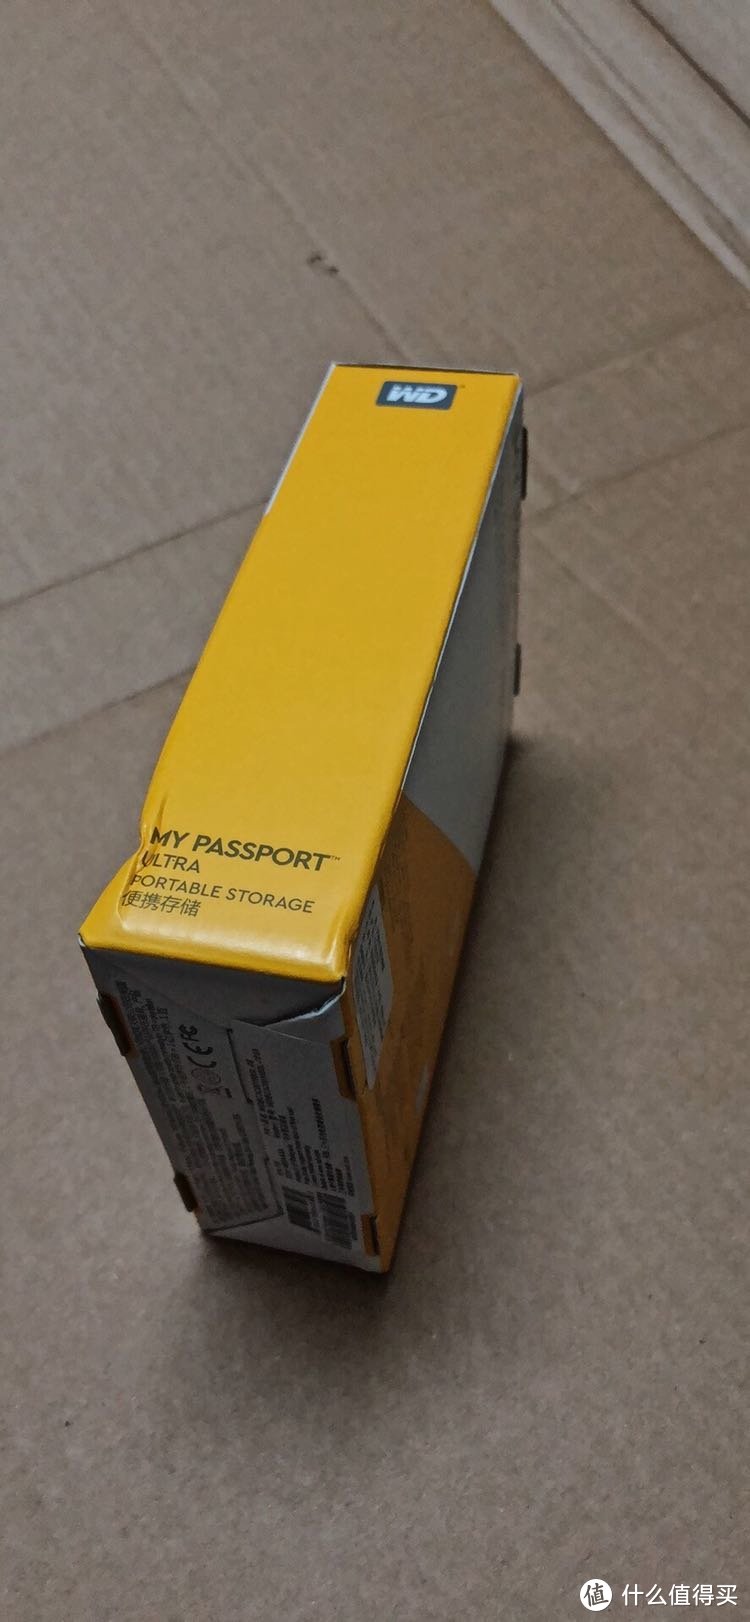 西部数据My Passport Ultra 1TB移动硬盘开箱简评